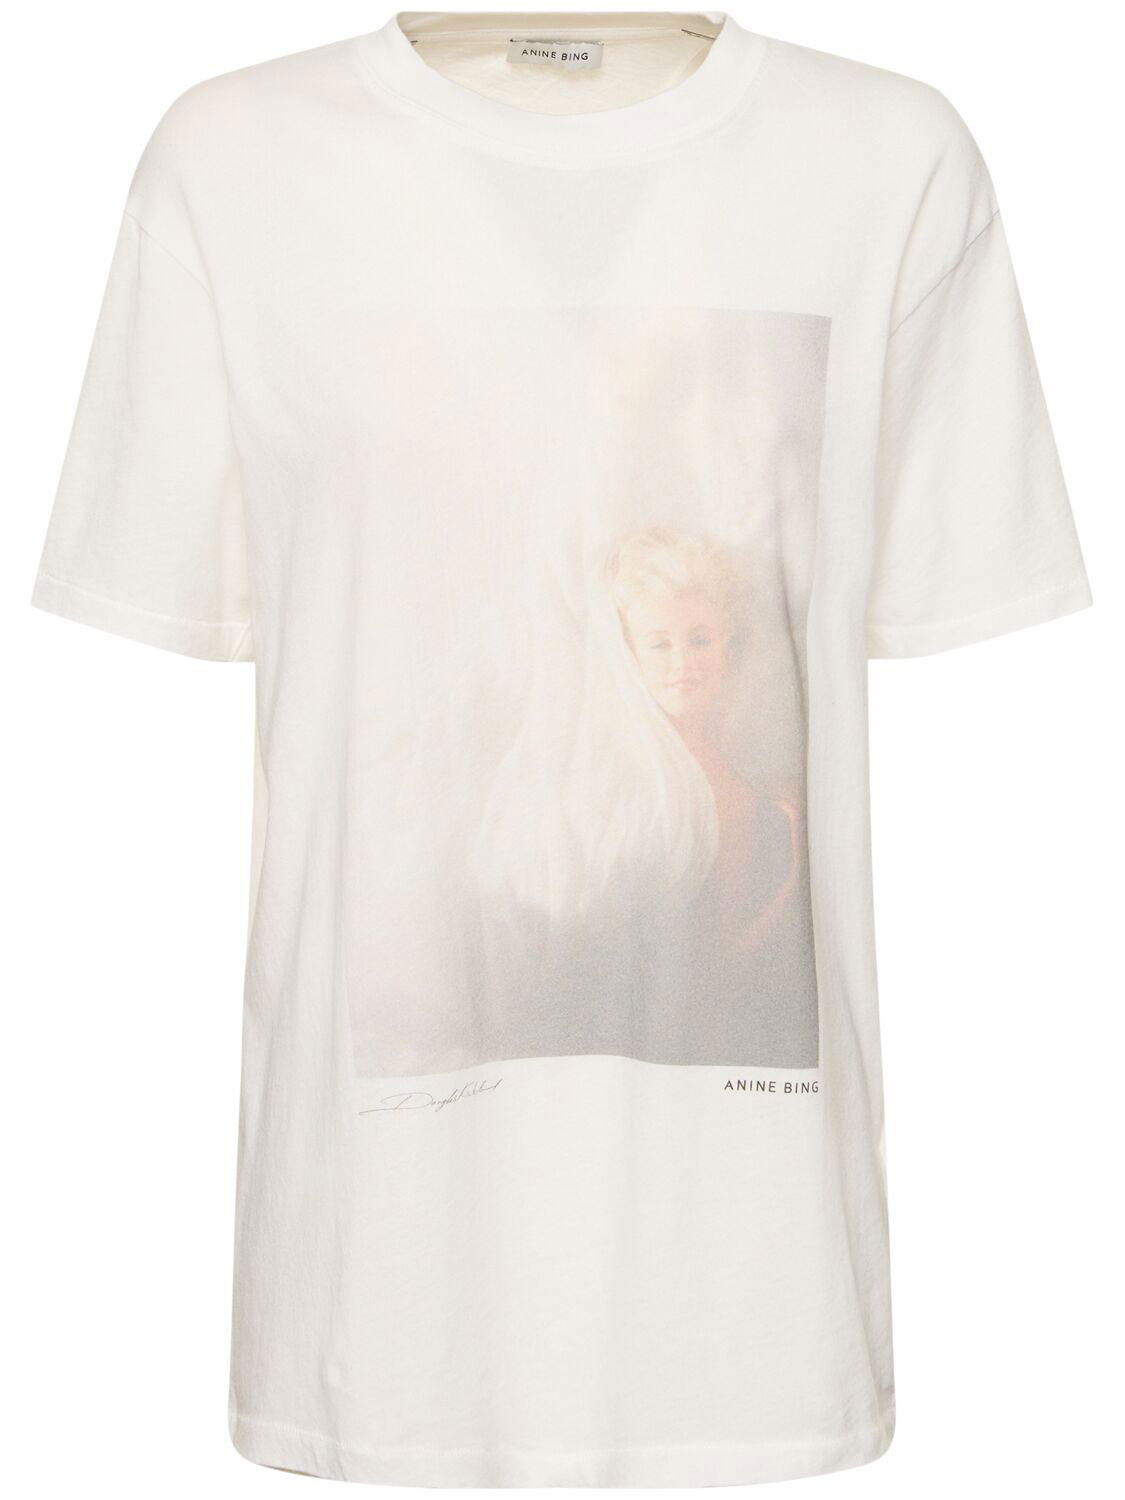 Lili Cotton Jersey T-shirt by ANINE BING